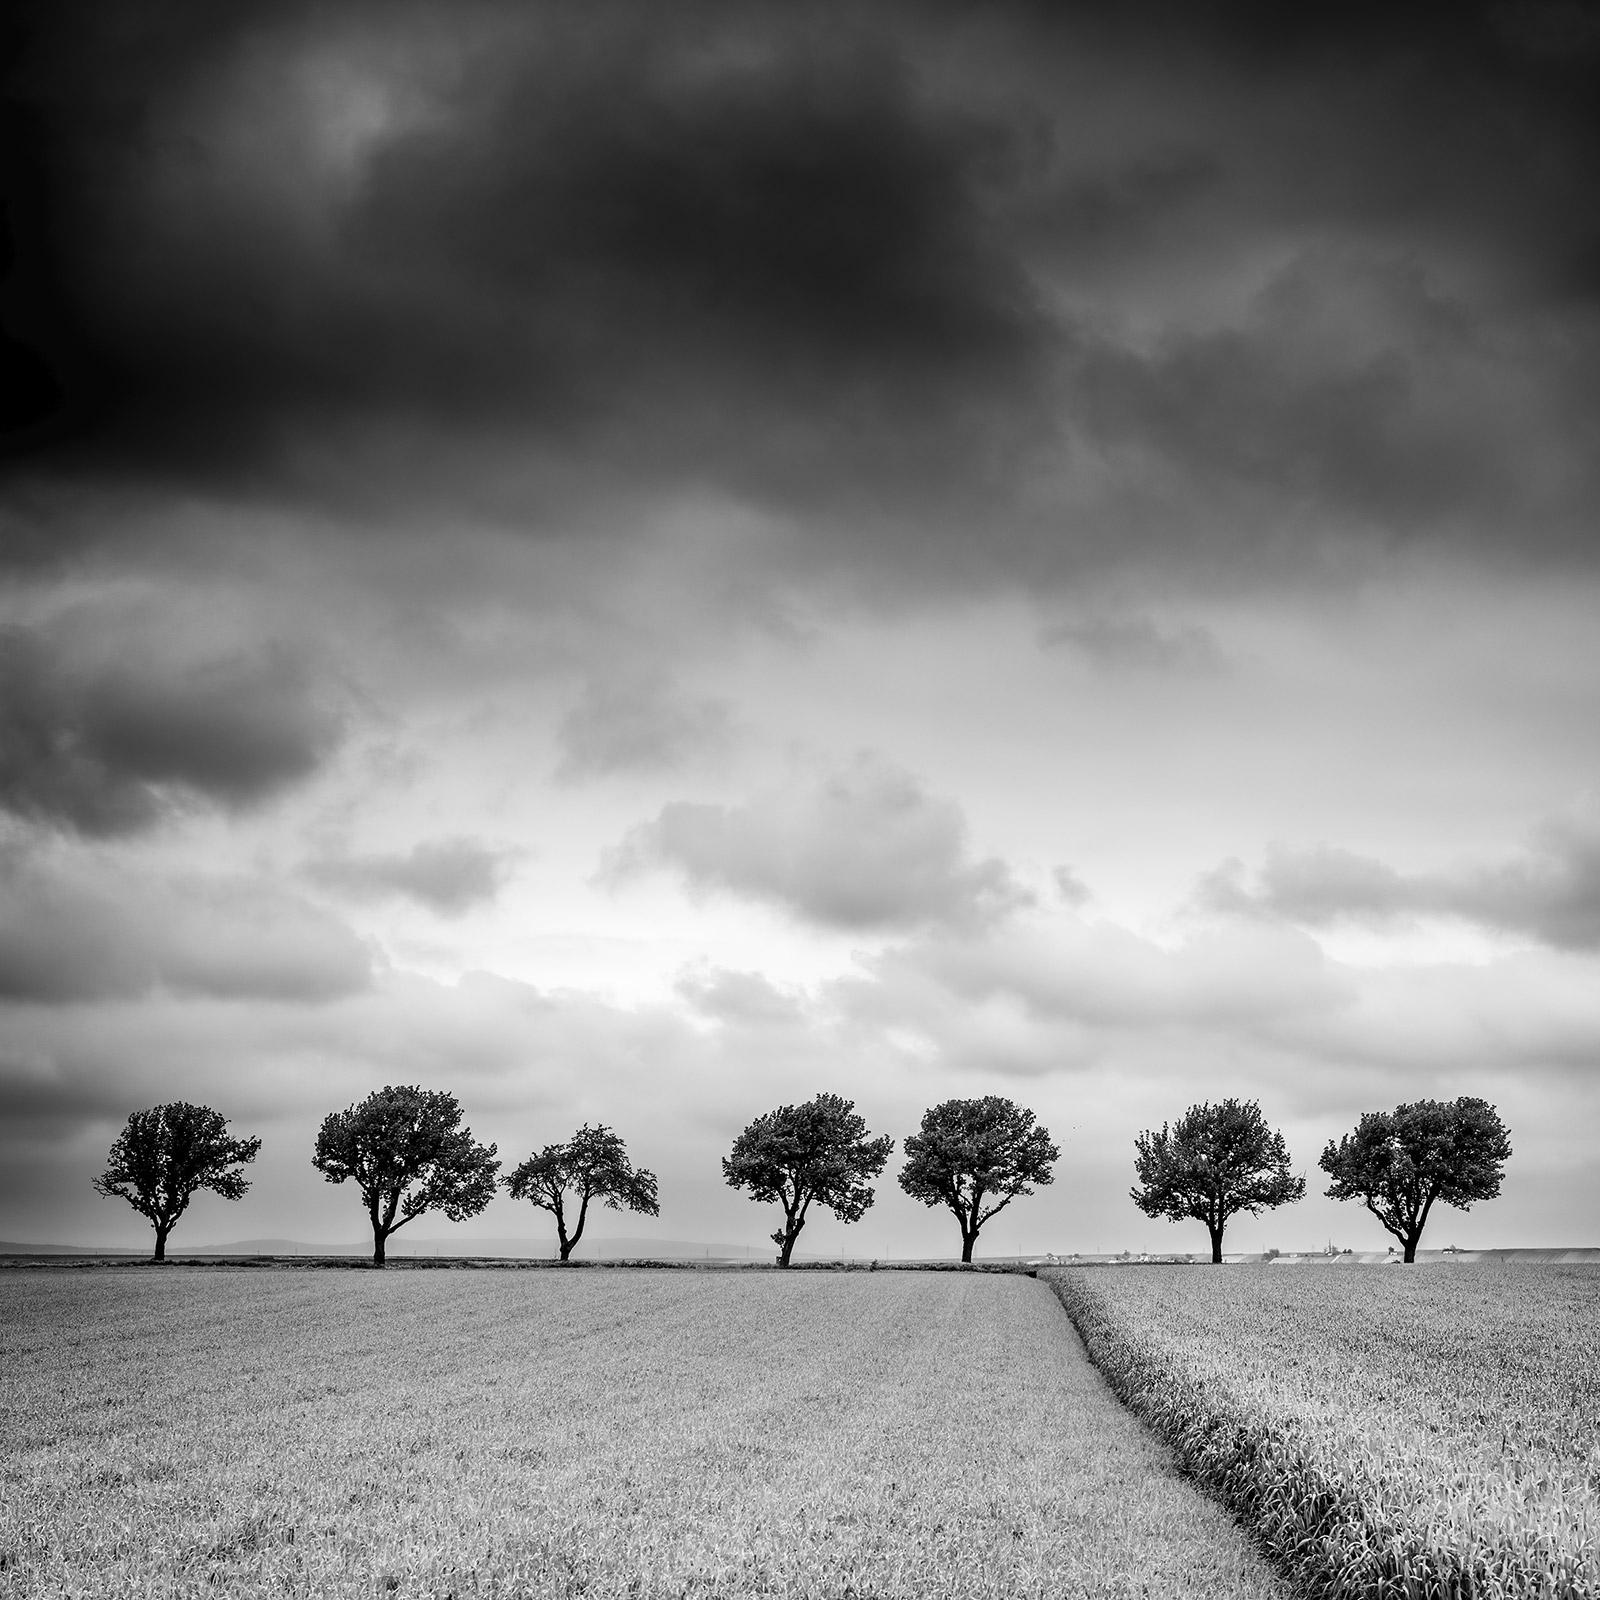 Gerald Berghammer Landscape Print – Bäume am Rande des Feldes, Wolken, Gewitter, Sturm, Schwarz-Weiß-Kunstlandschaftsfotografie